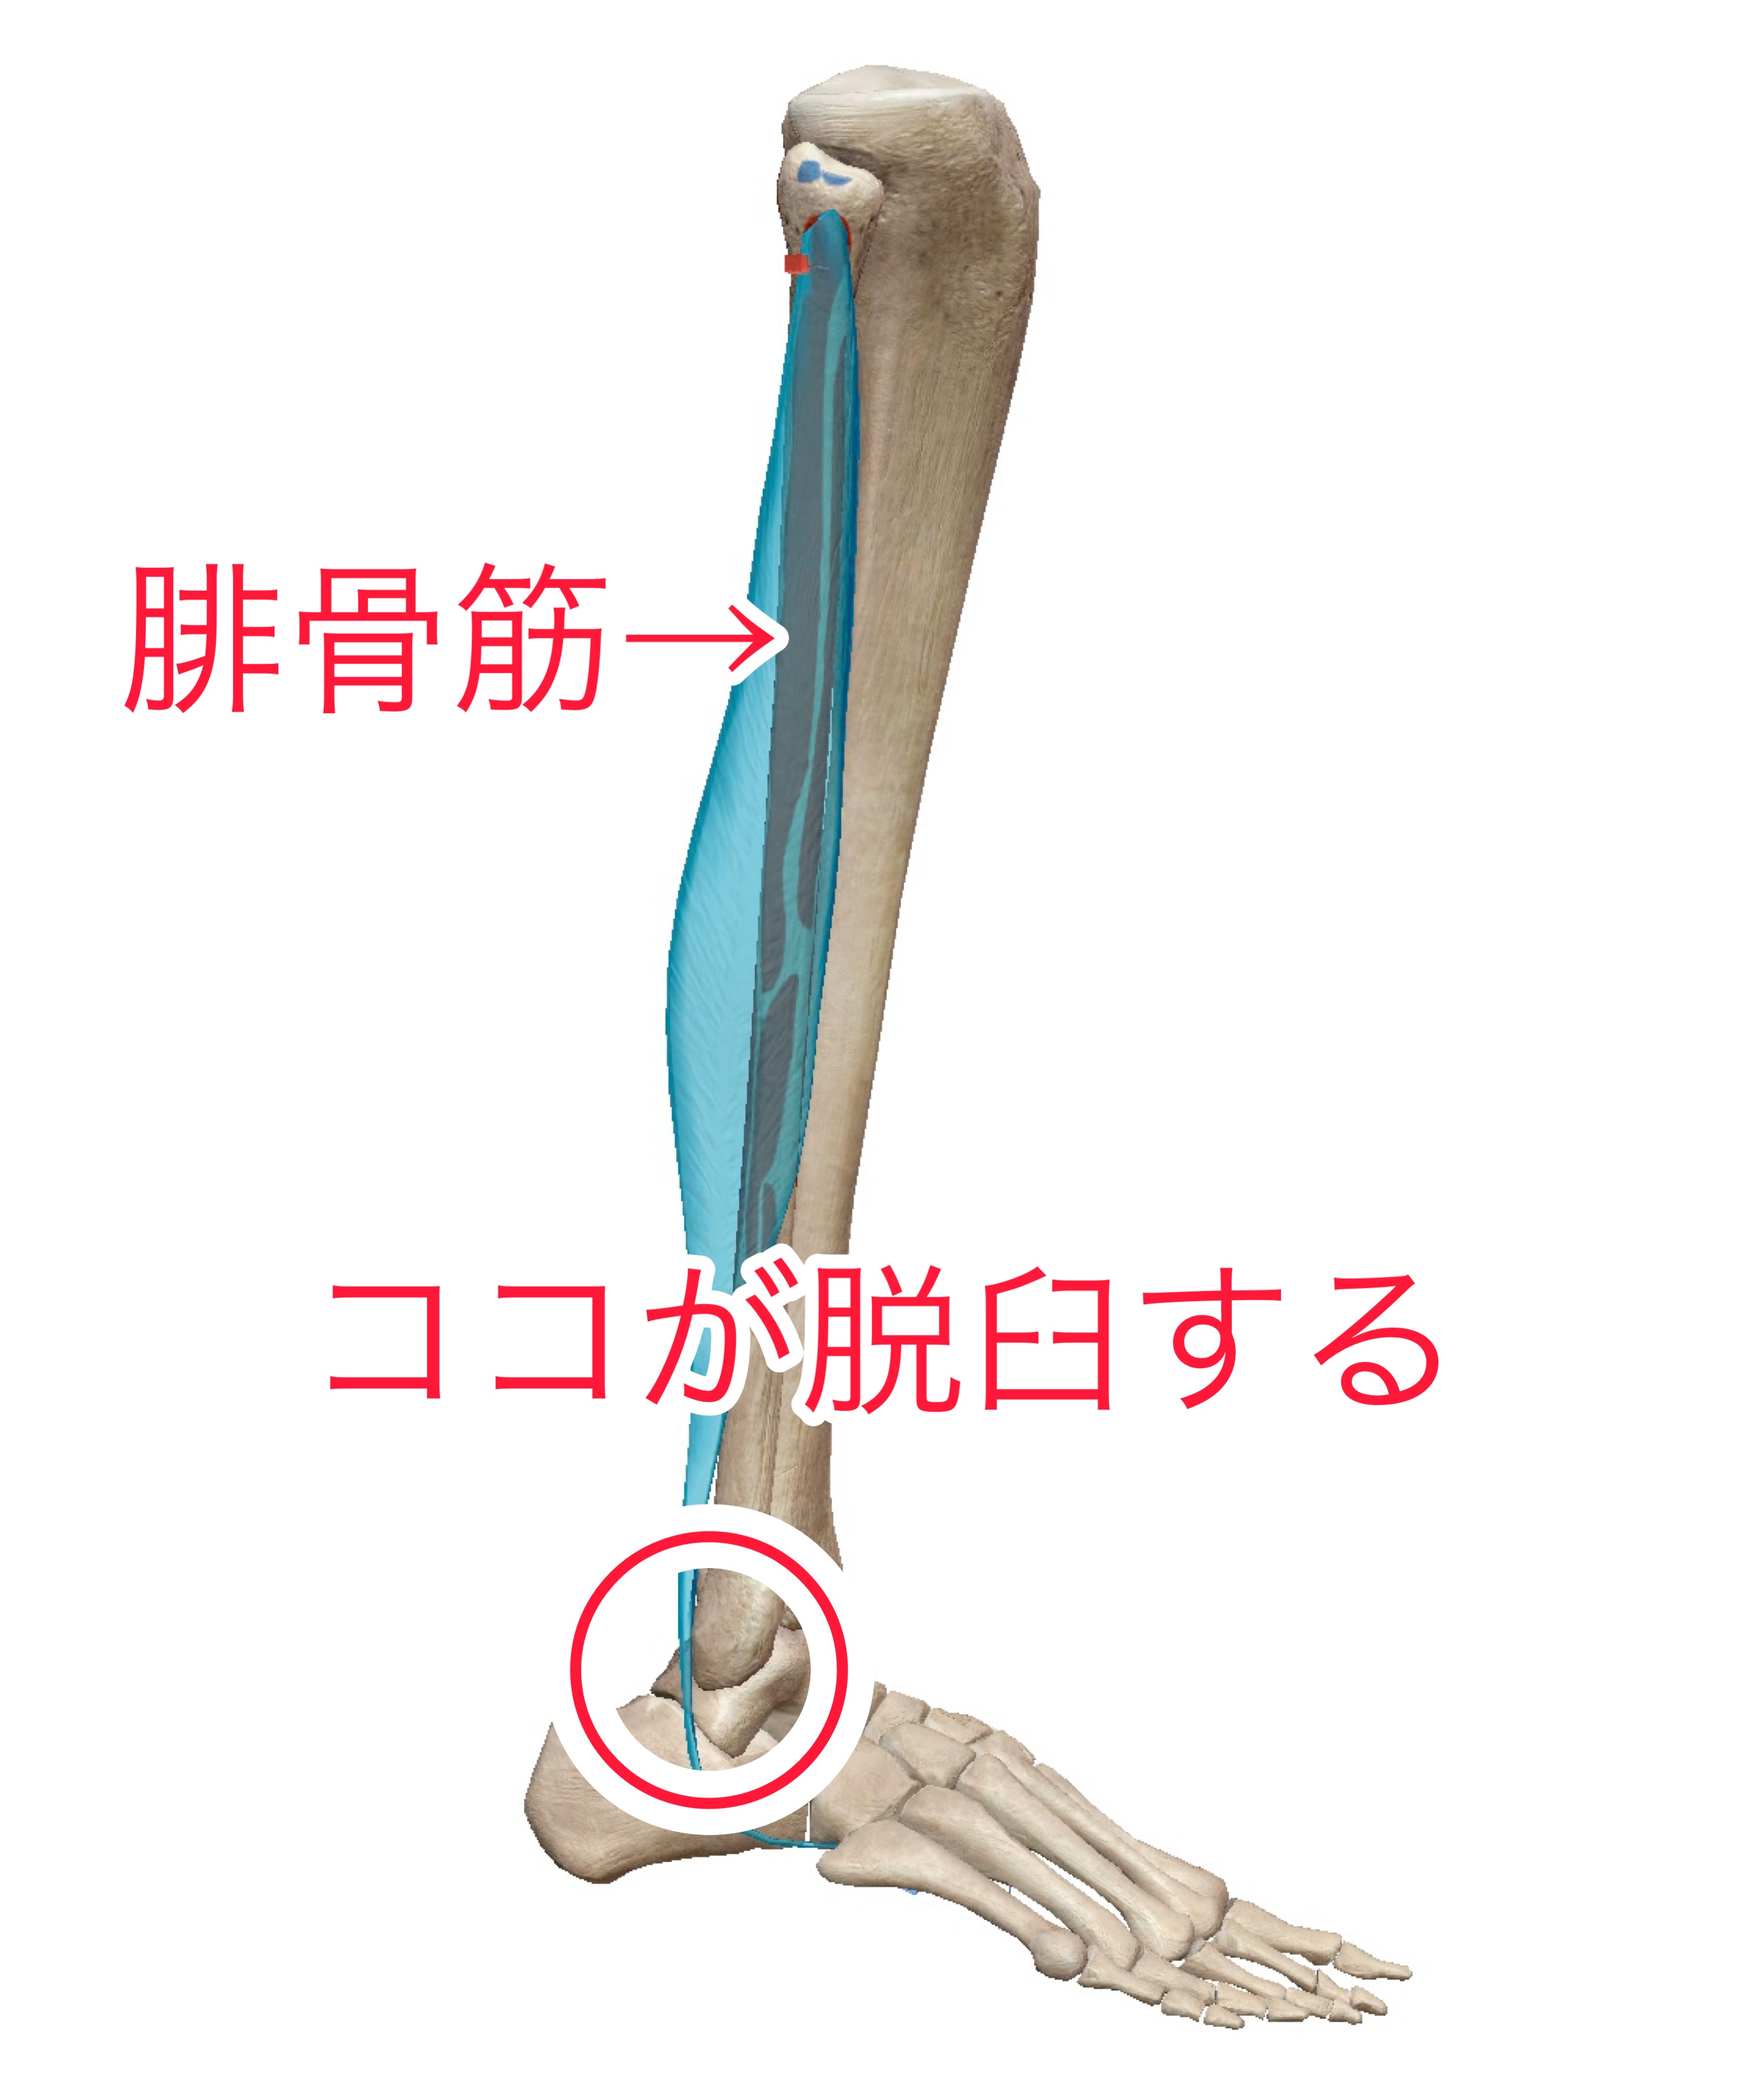 腓骨筋腱脱臼とは 腓骨筋腱脱臼といえば新宿足改善センターへ